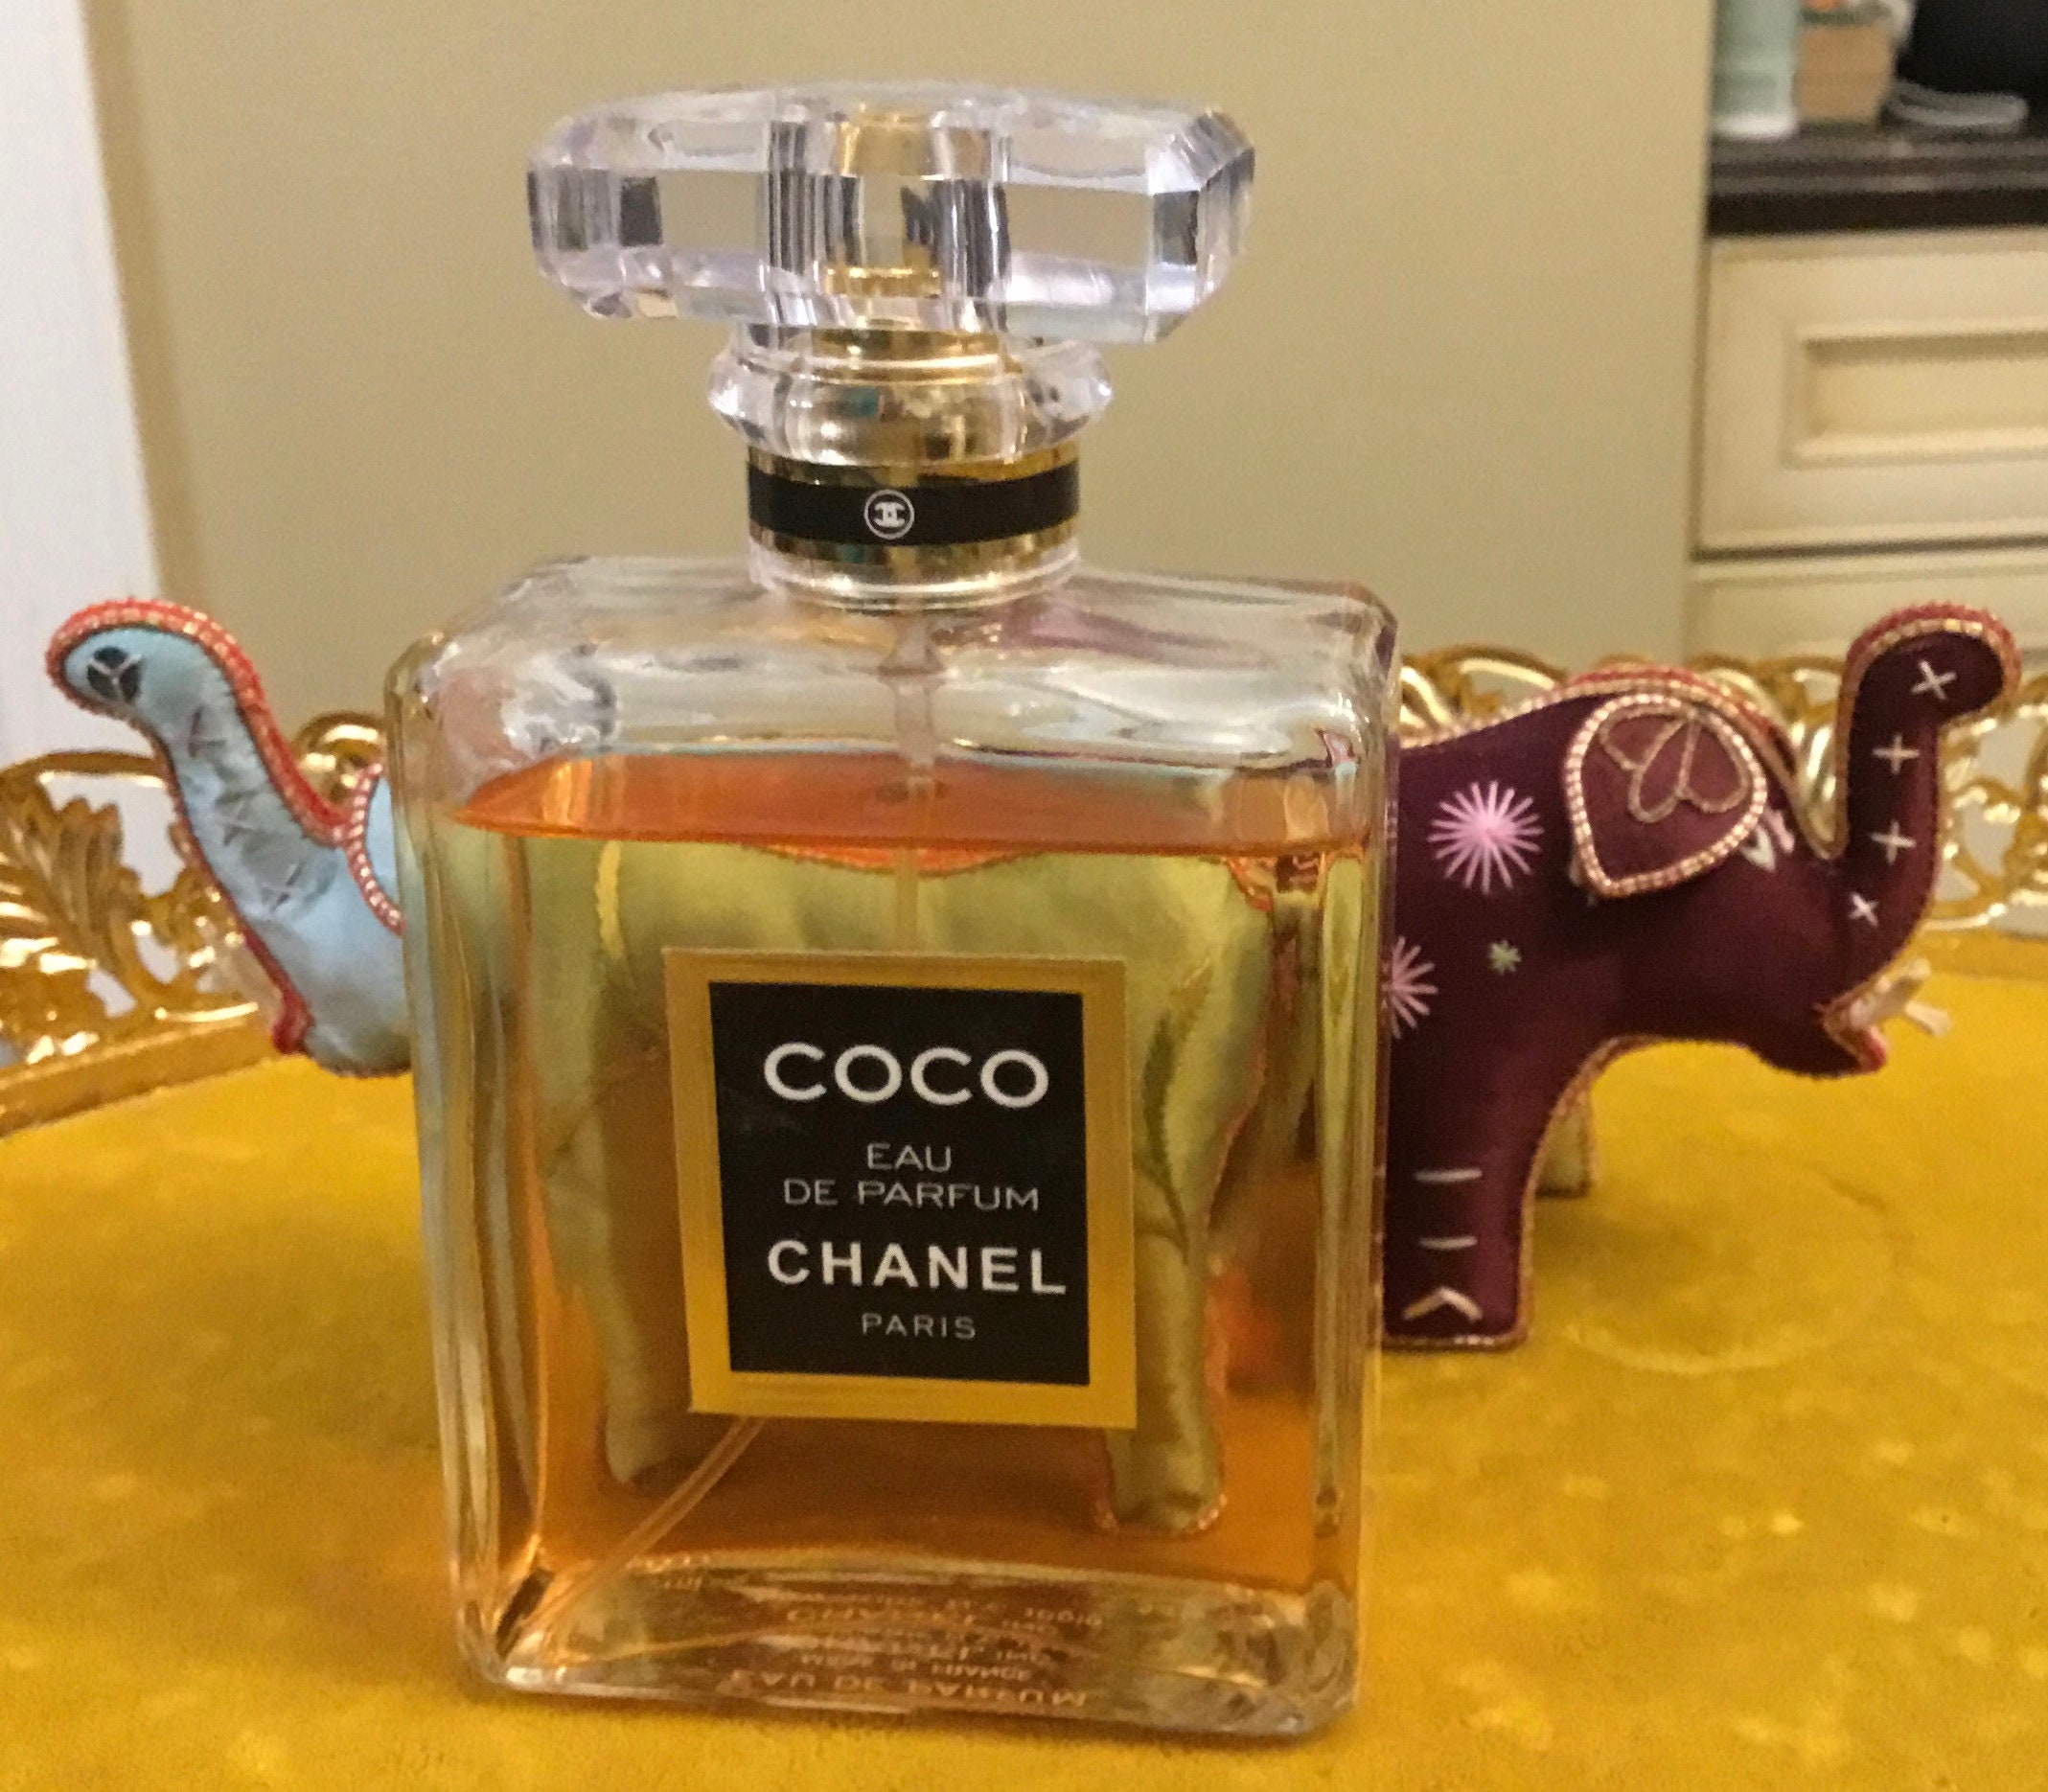 Bedrift vride Diskret Coco Chanel Eau De Parfum French Perfume Paris 3.4 Fl Oz - Etsy